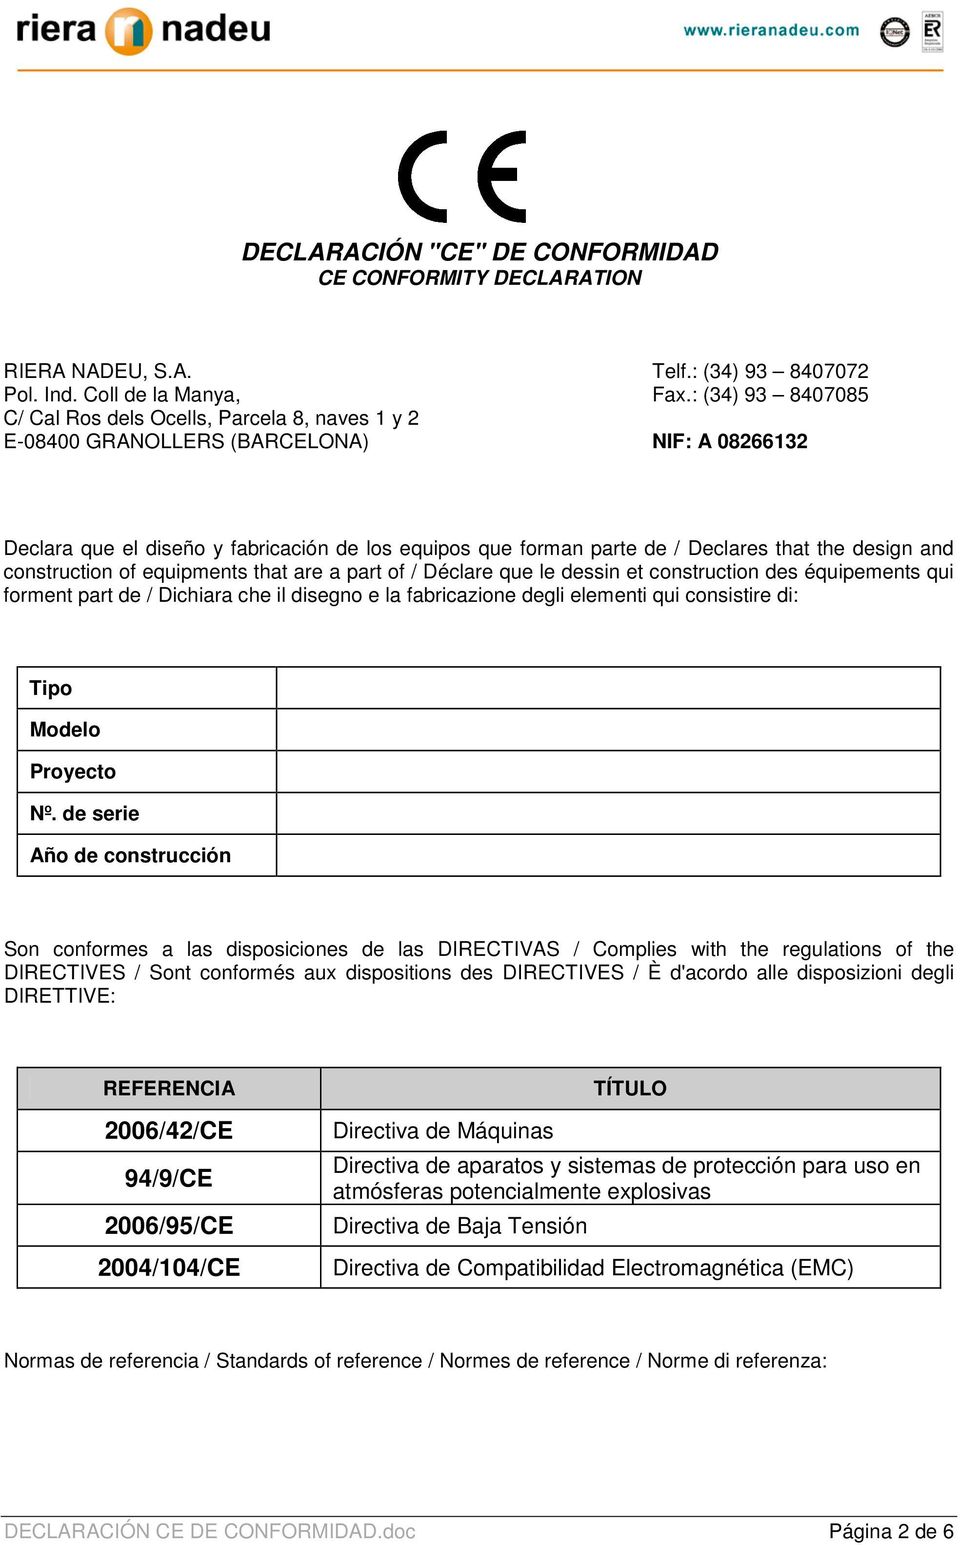 DECLARACIÓN CE DE CONFORMIDAD - PDF Free Download